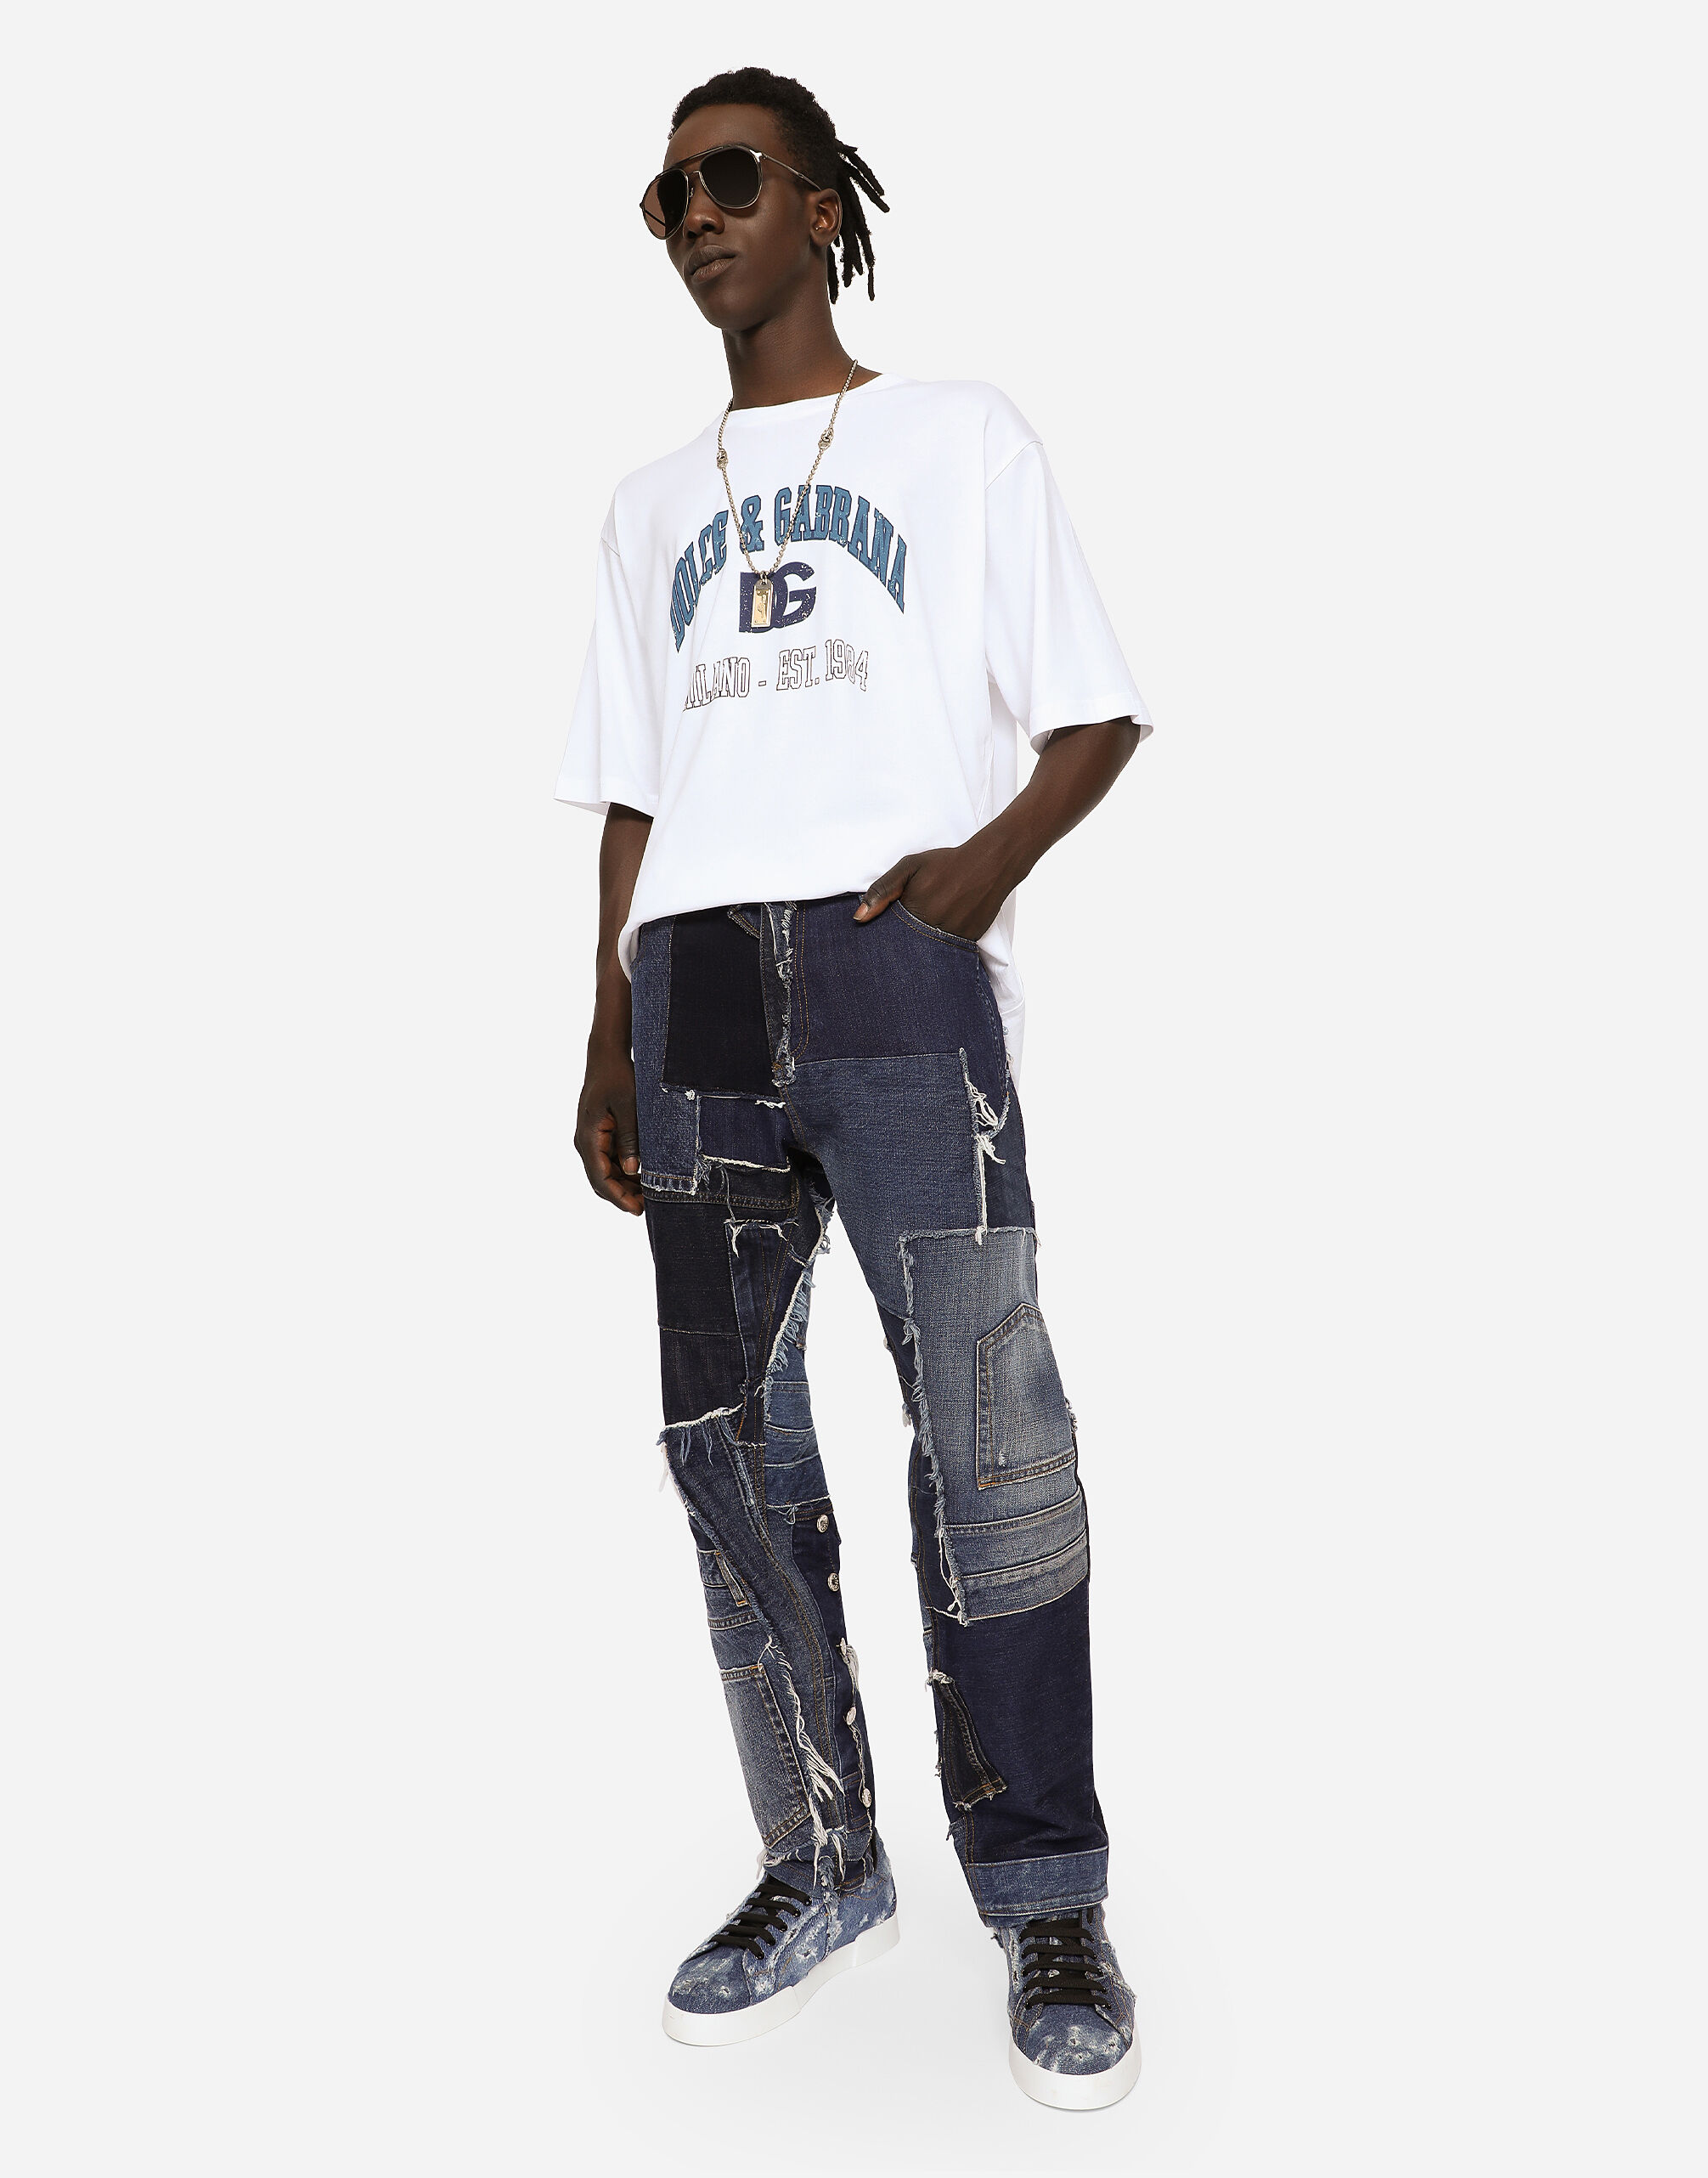 HOT新品FLEXHOODxBLACK8MOB patchwork jeans ジーンズ パンツ